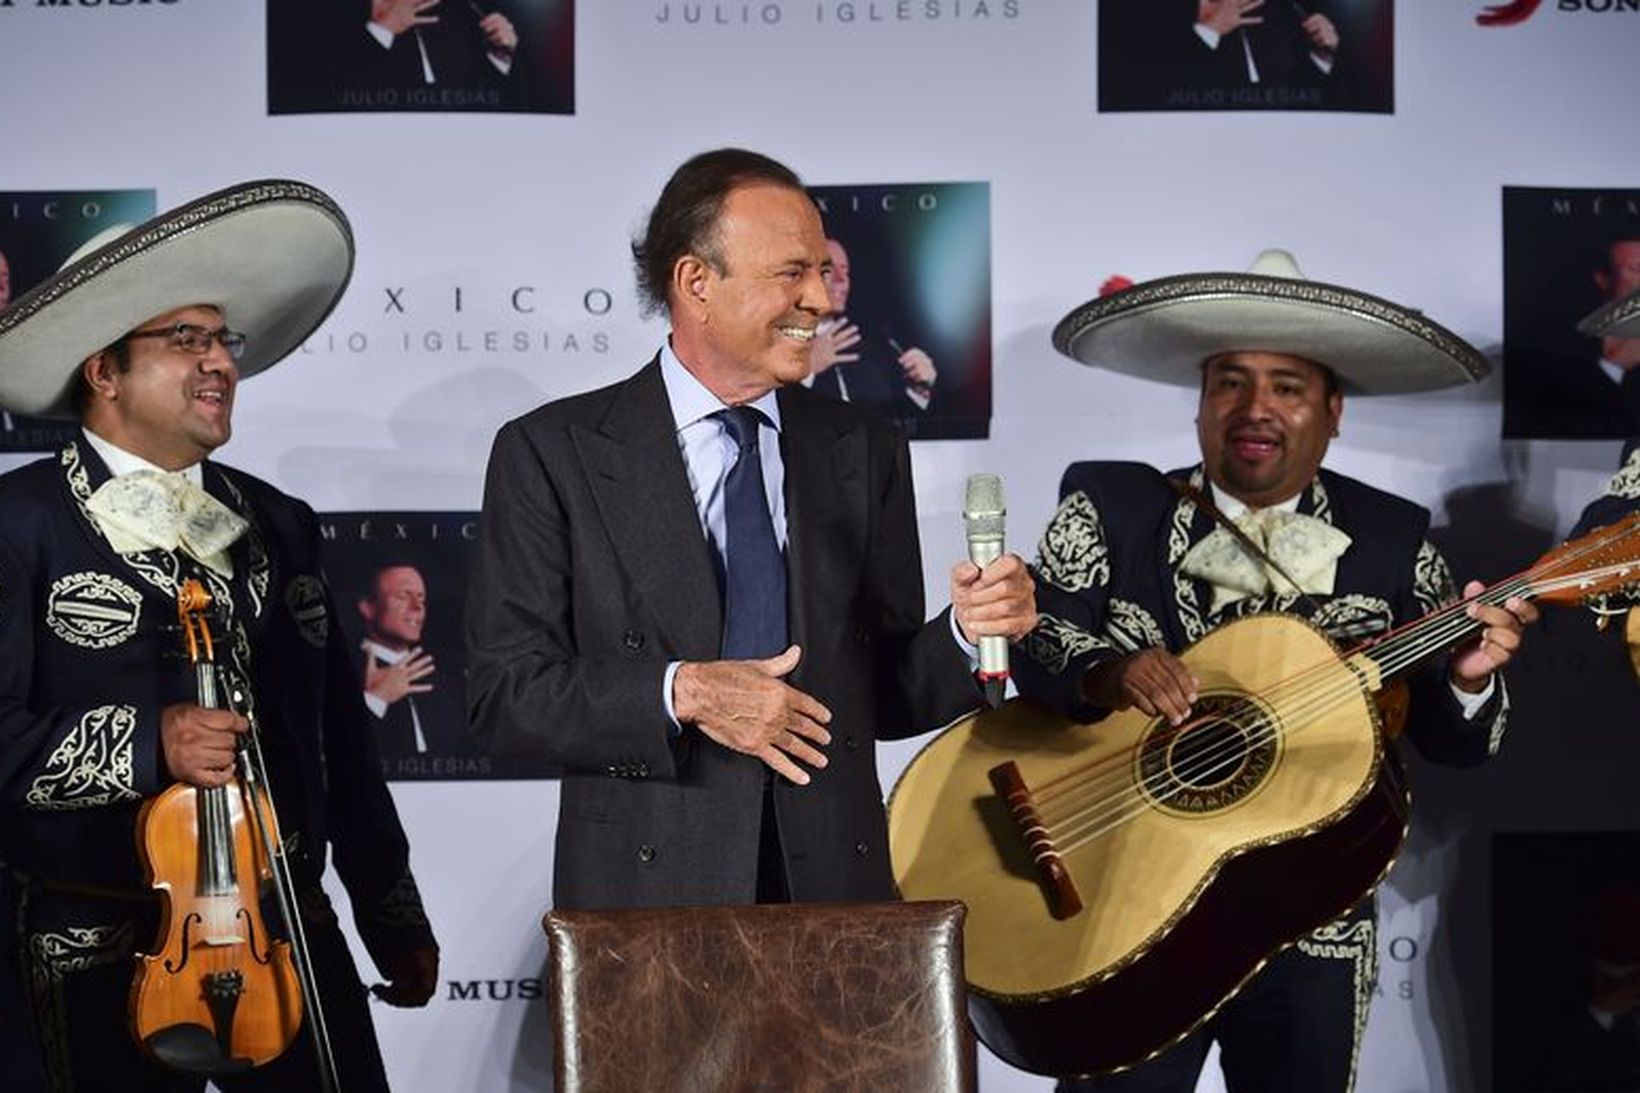 Julio Iglesias sést hér kynna nýjustu hljómplötu sína Mexíkó.